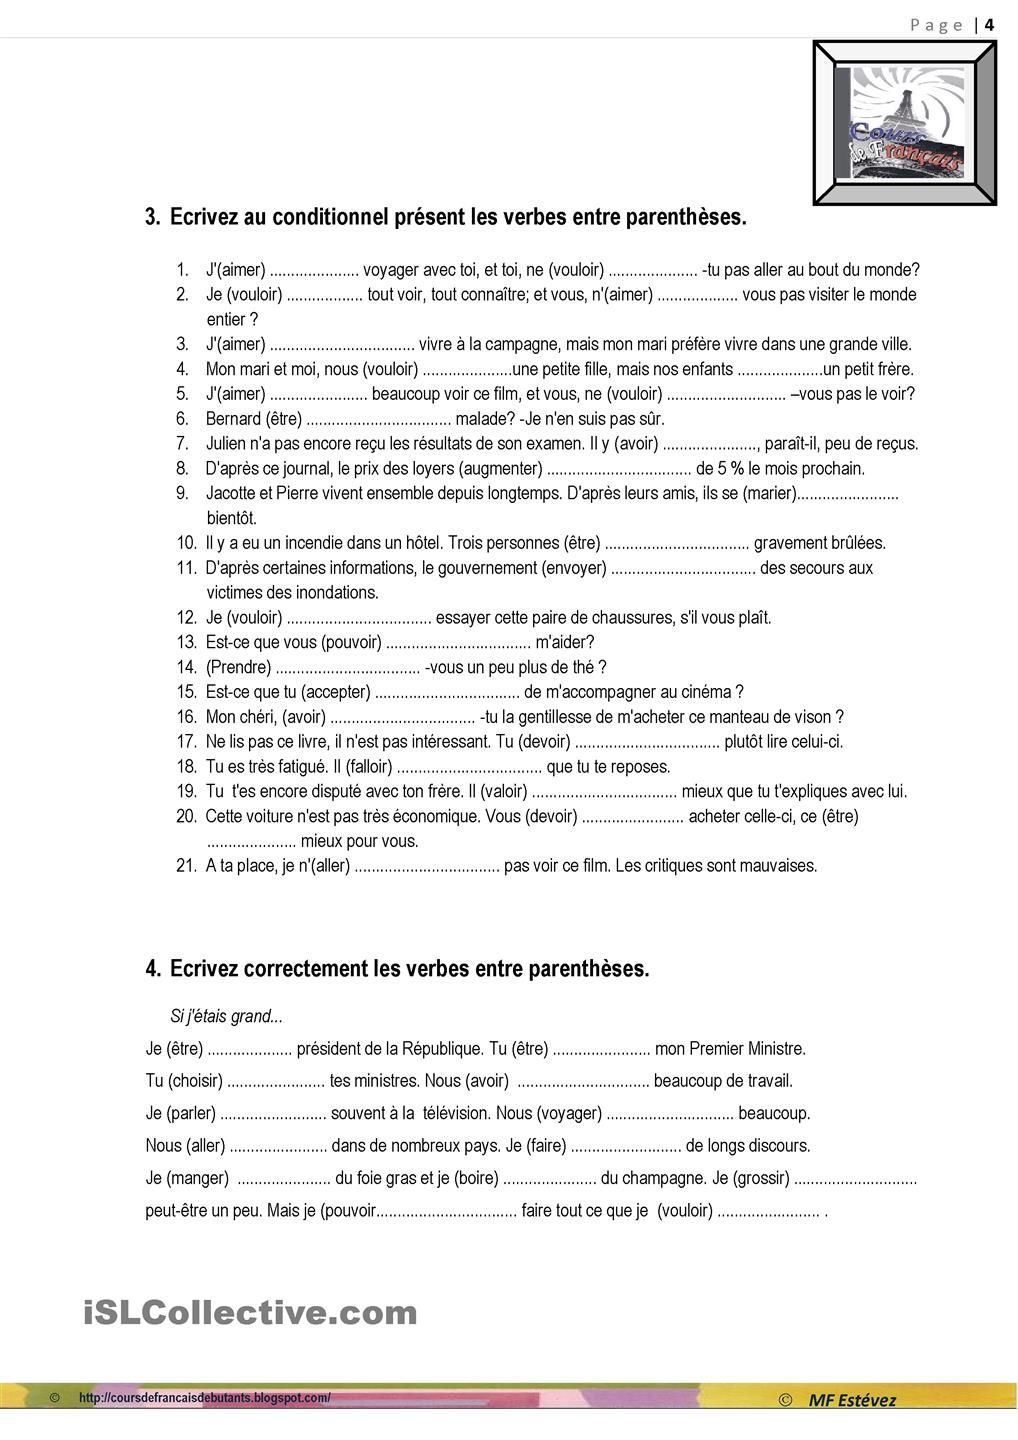 Assimil Le Francais en pratique PDF